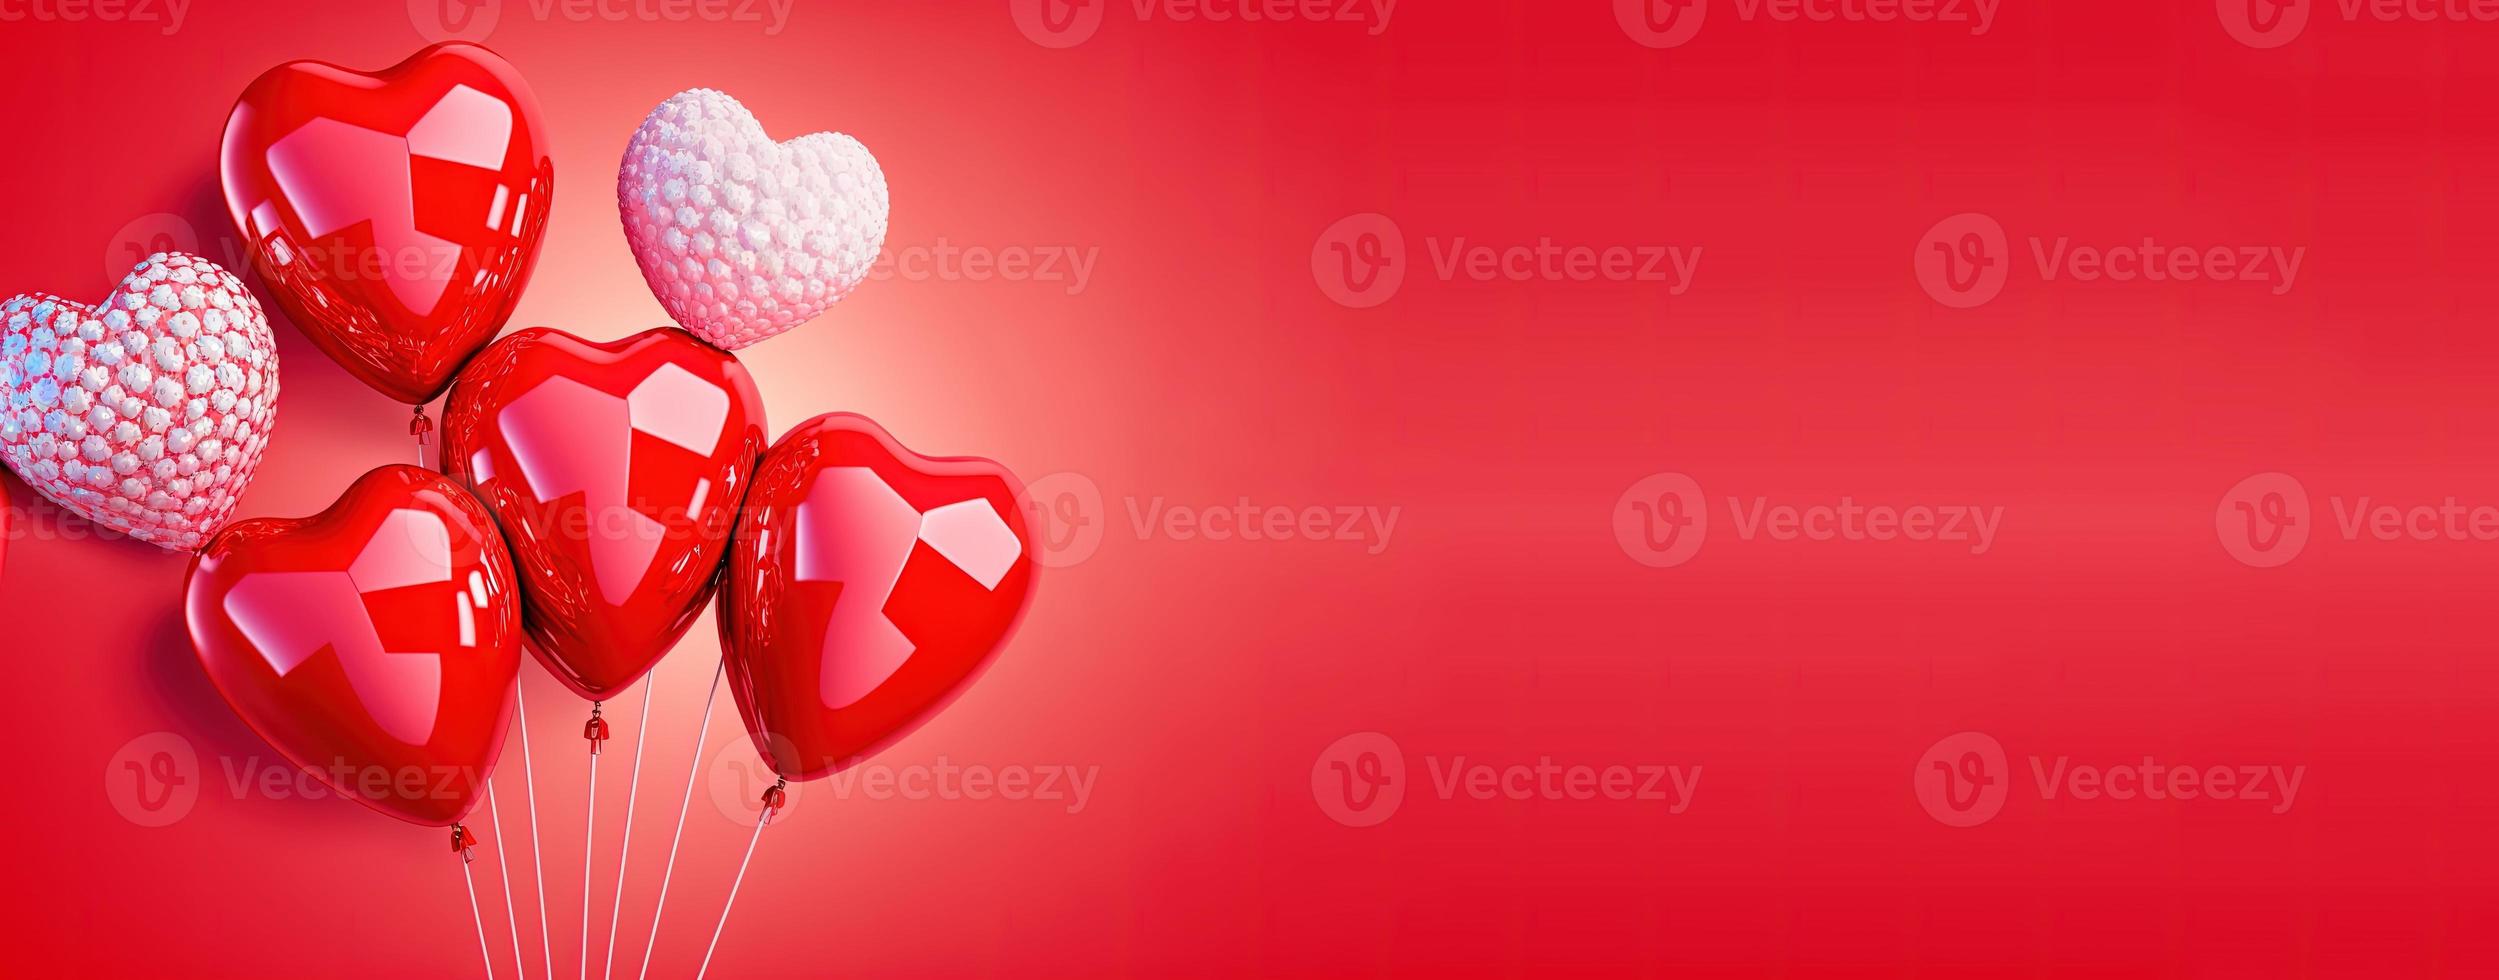 fondo de banner del día de san valentín con un corazón rojo brillante en 3d foto